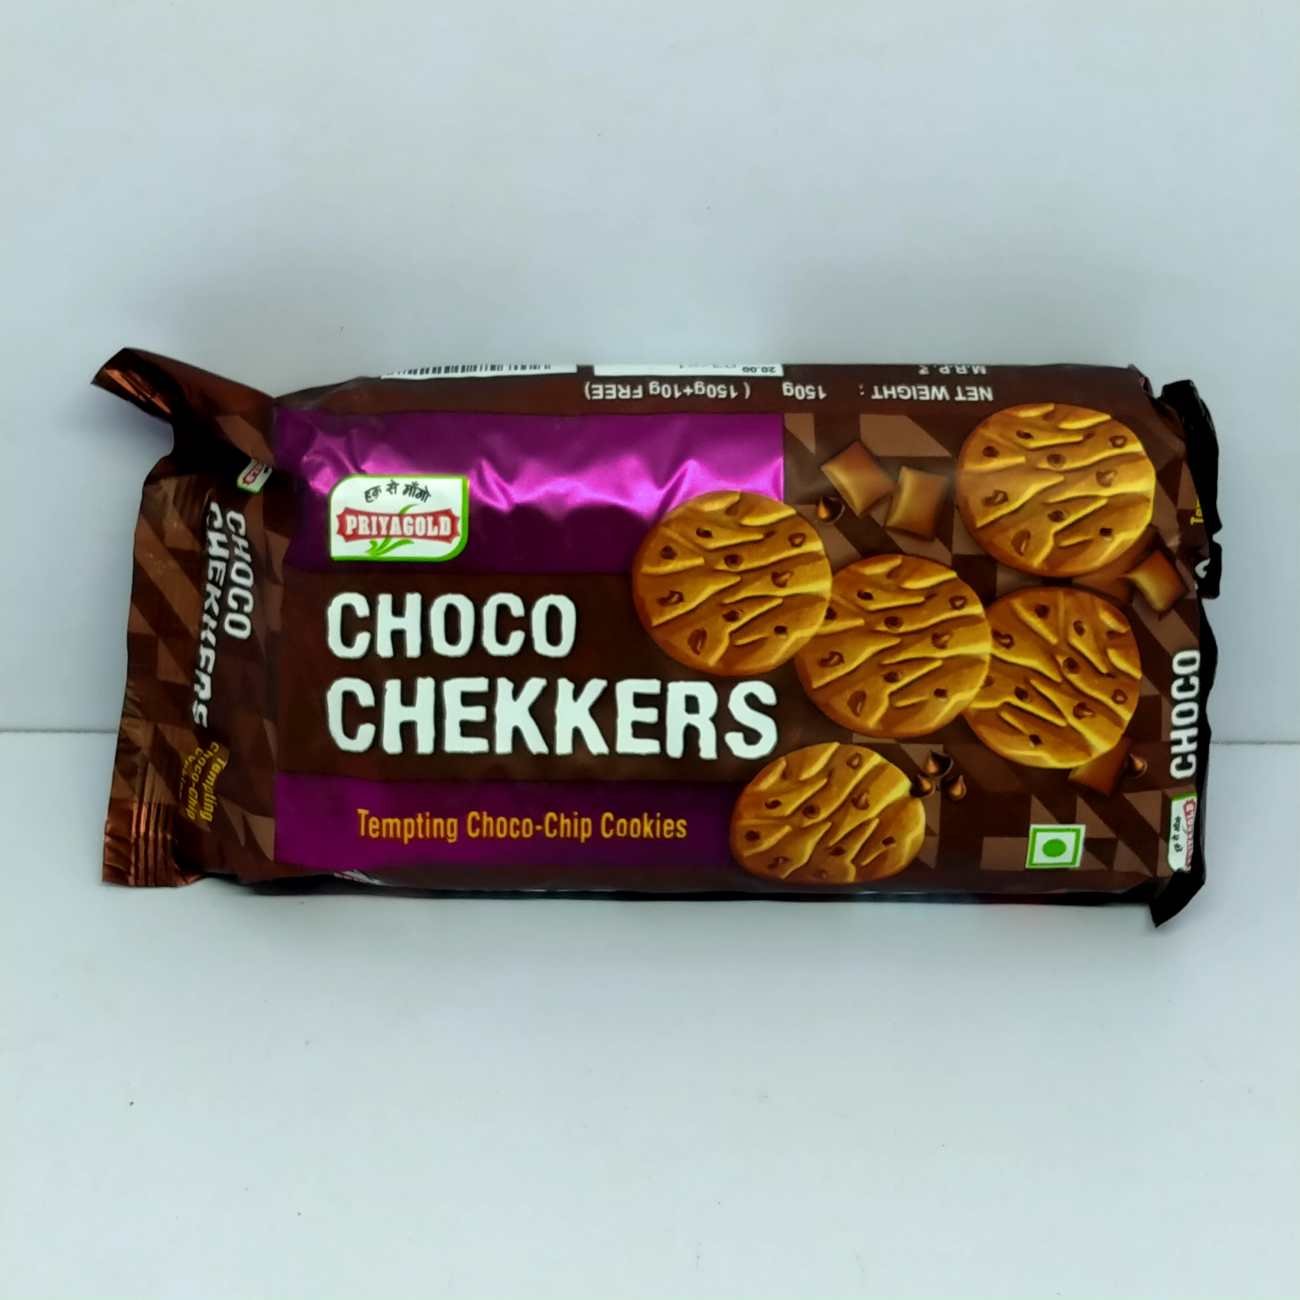 Priyagold choco chekkers, tempting choco chip cookies, 150 grams + 10 gram free